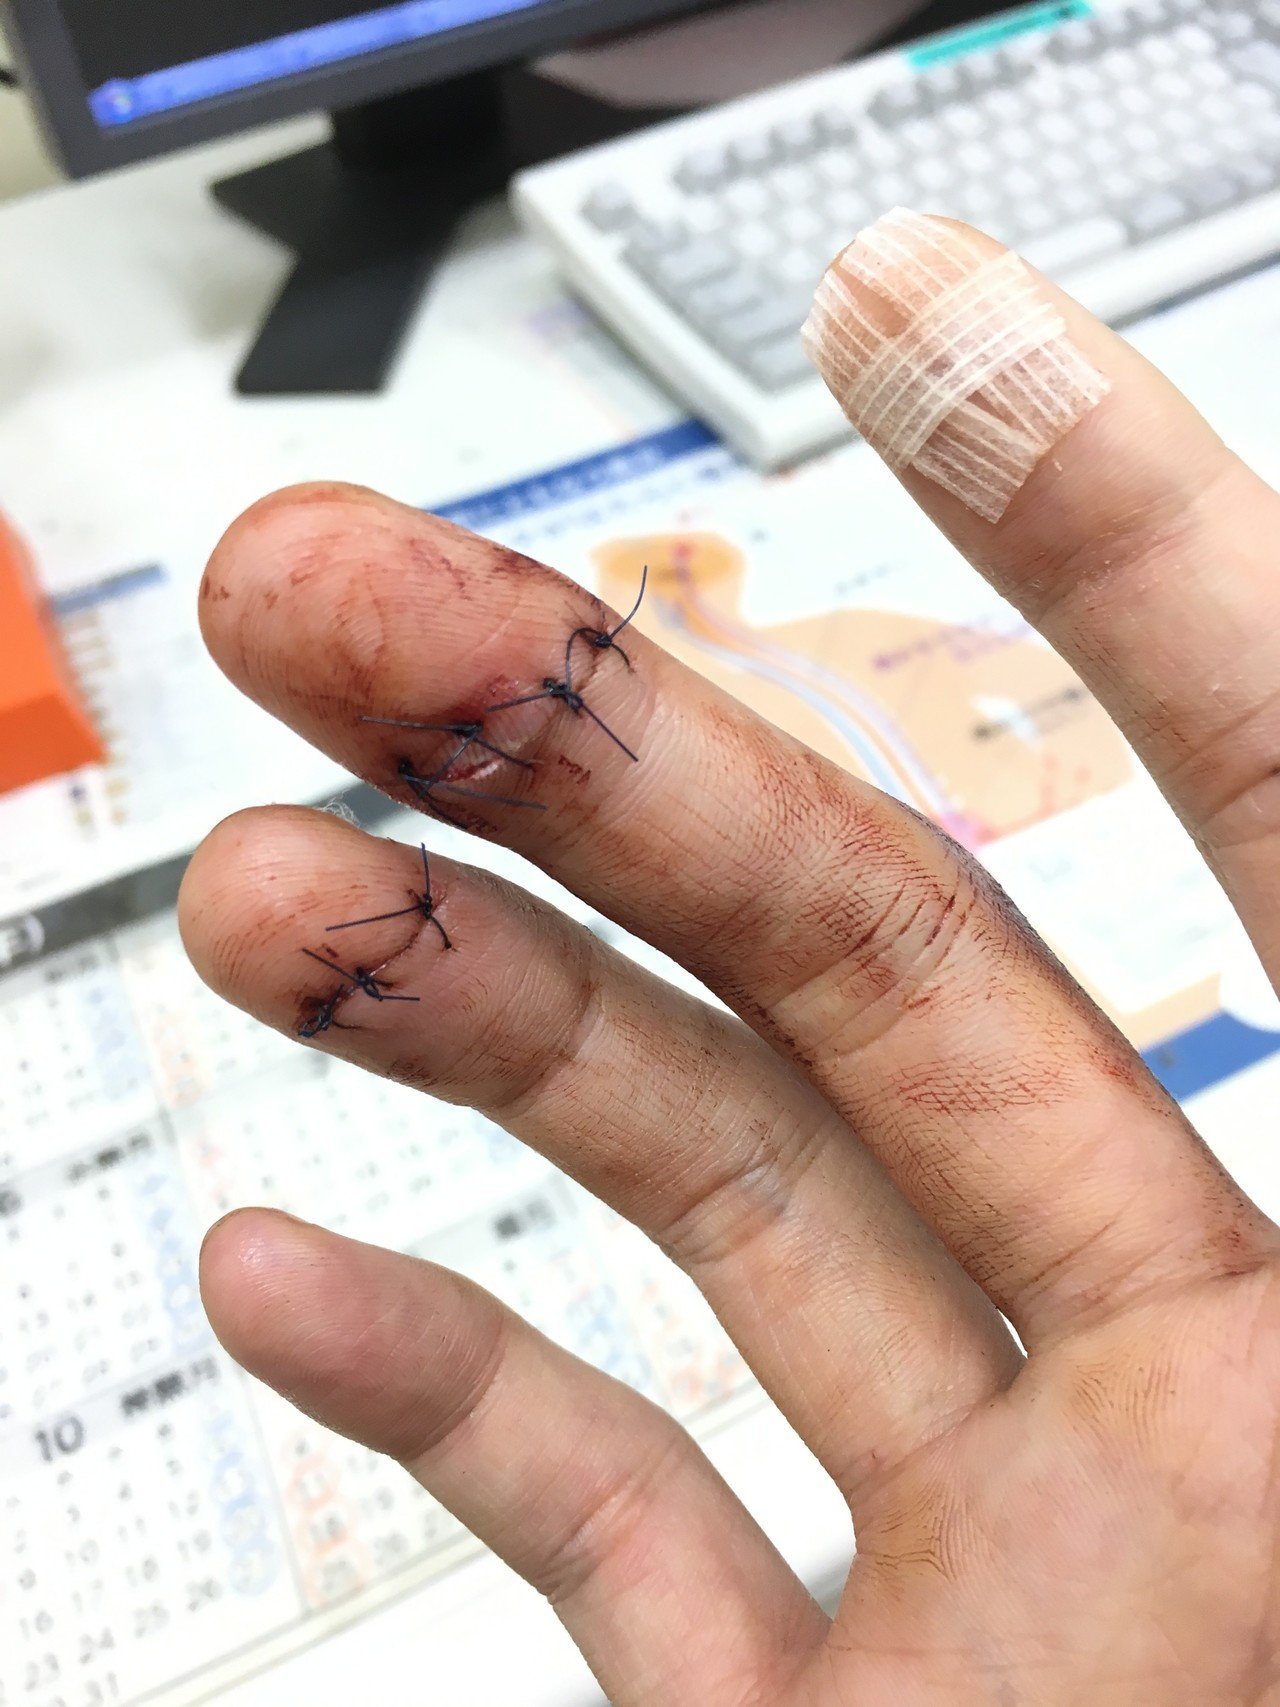 グロ注意 指を合計7針縫う怪我をしたときの治療の経過です しょ Note